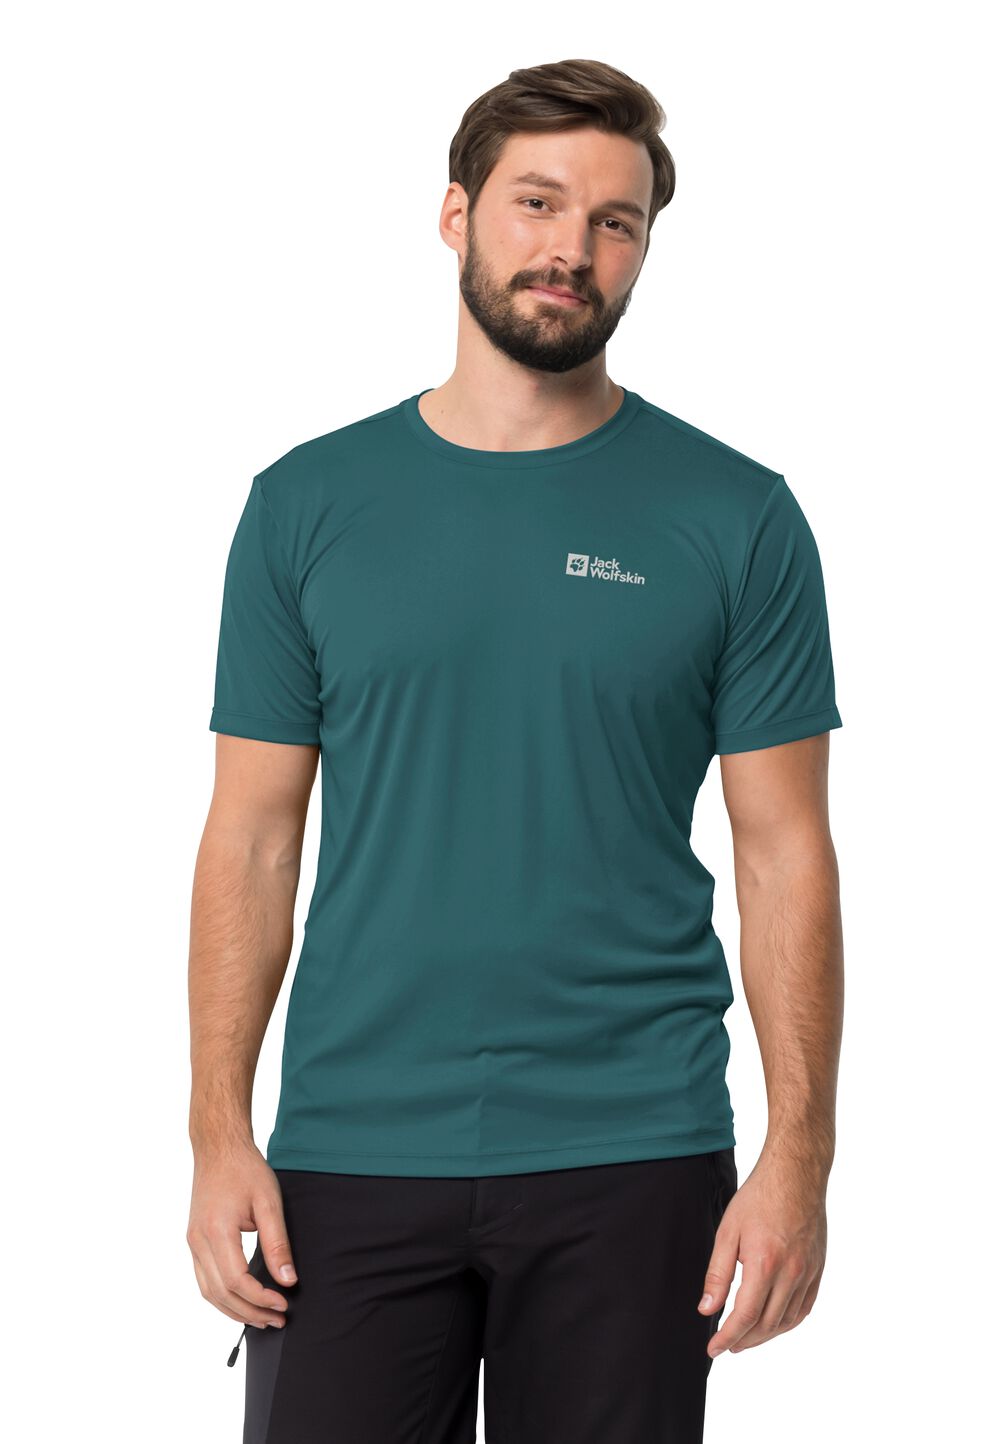 Jack Wolfskin Funktionsshirt Herren Tech T-Shirt Men S emerald emerald von Jack Wolfskin